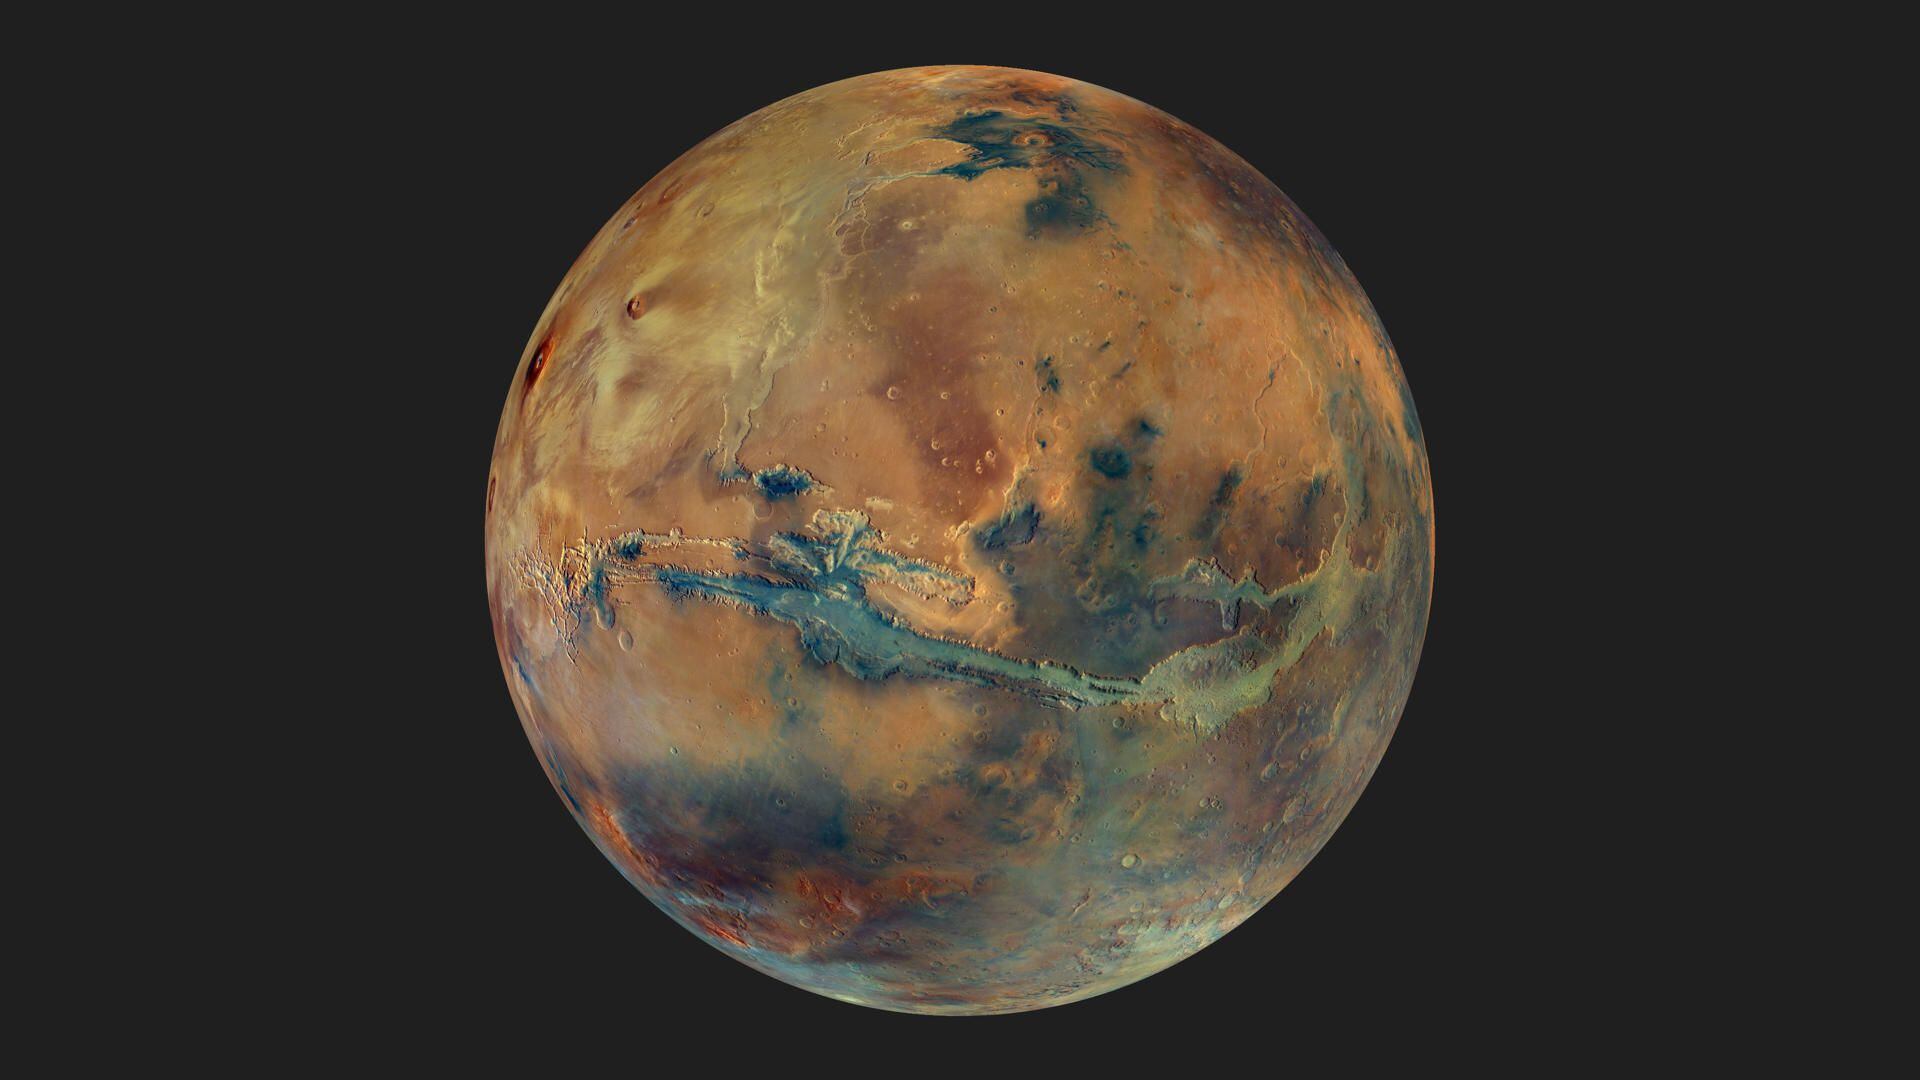 Imagen compuesta por un mosaico de imágenes que muestra el globo terráqueo de Marte sobre un fondo oscuro. El disco del planeta presenta manchas amarillas, naranjas, azules y verdes, todas ellas con un tono gris apagado, que representa la composición variable de la superficie. Cedida por ESA/DLR/FU Berlin/G. Michael, CC BY-SA 3.0 IGO
